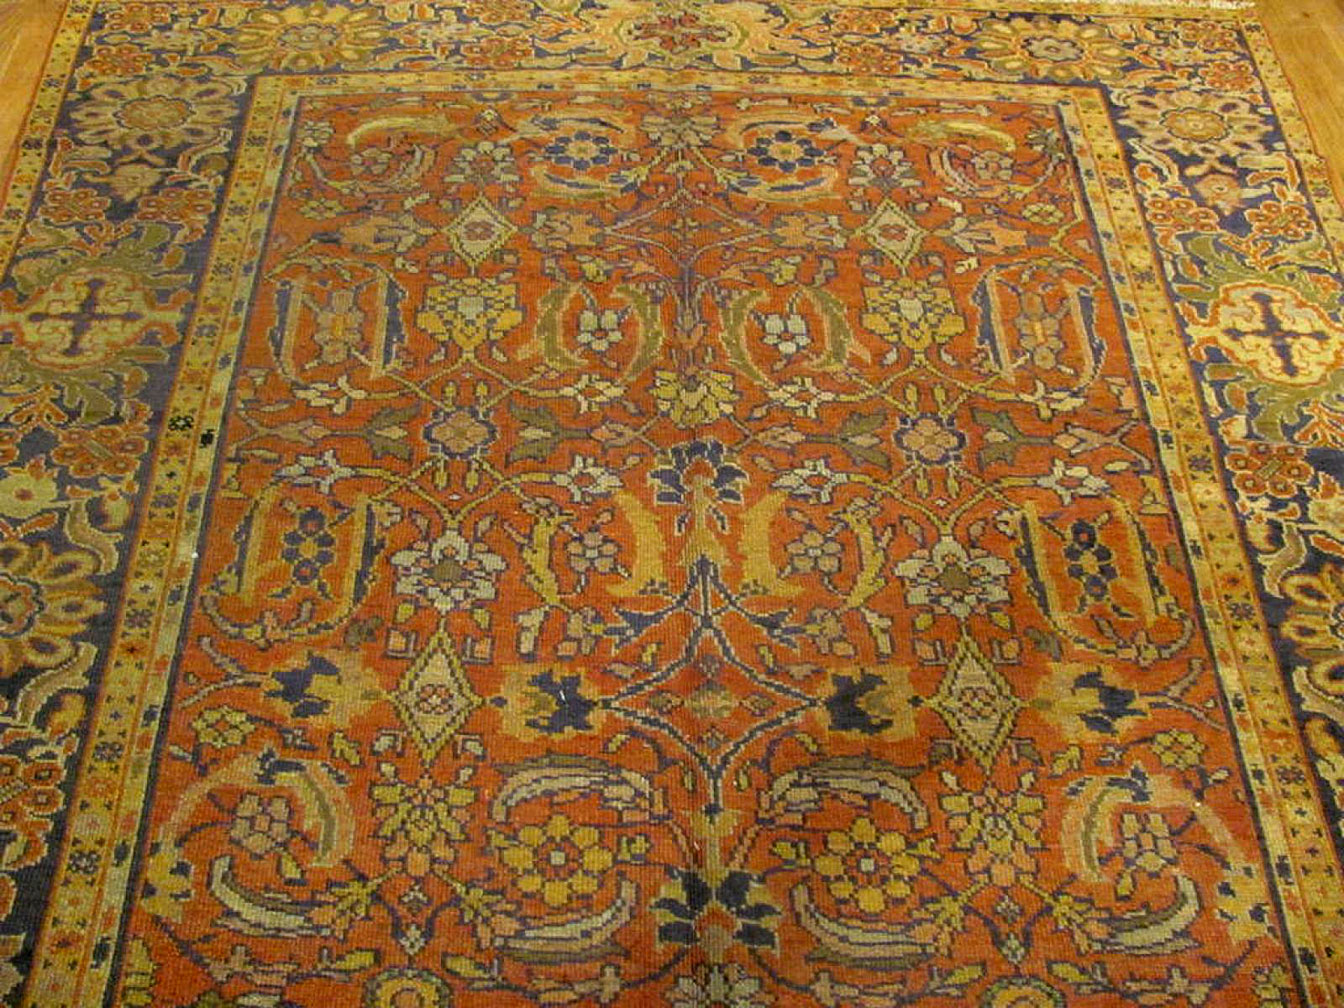 Antique mahal Carpet - # 52070